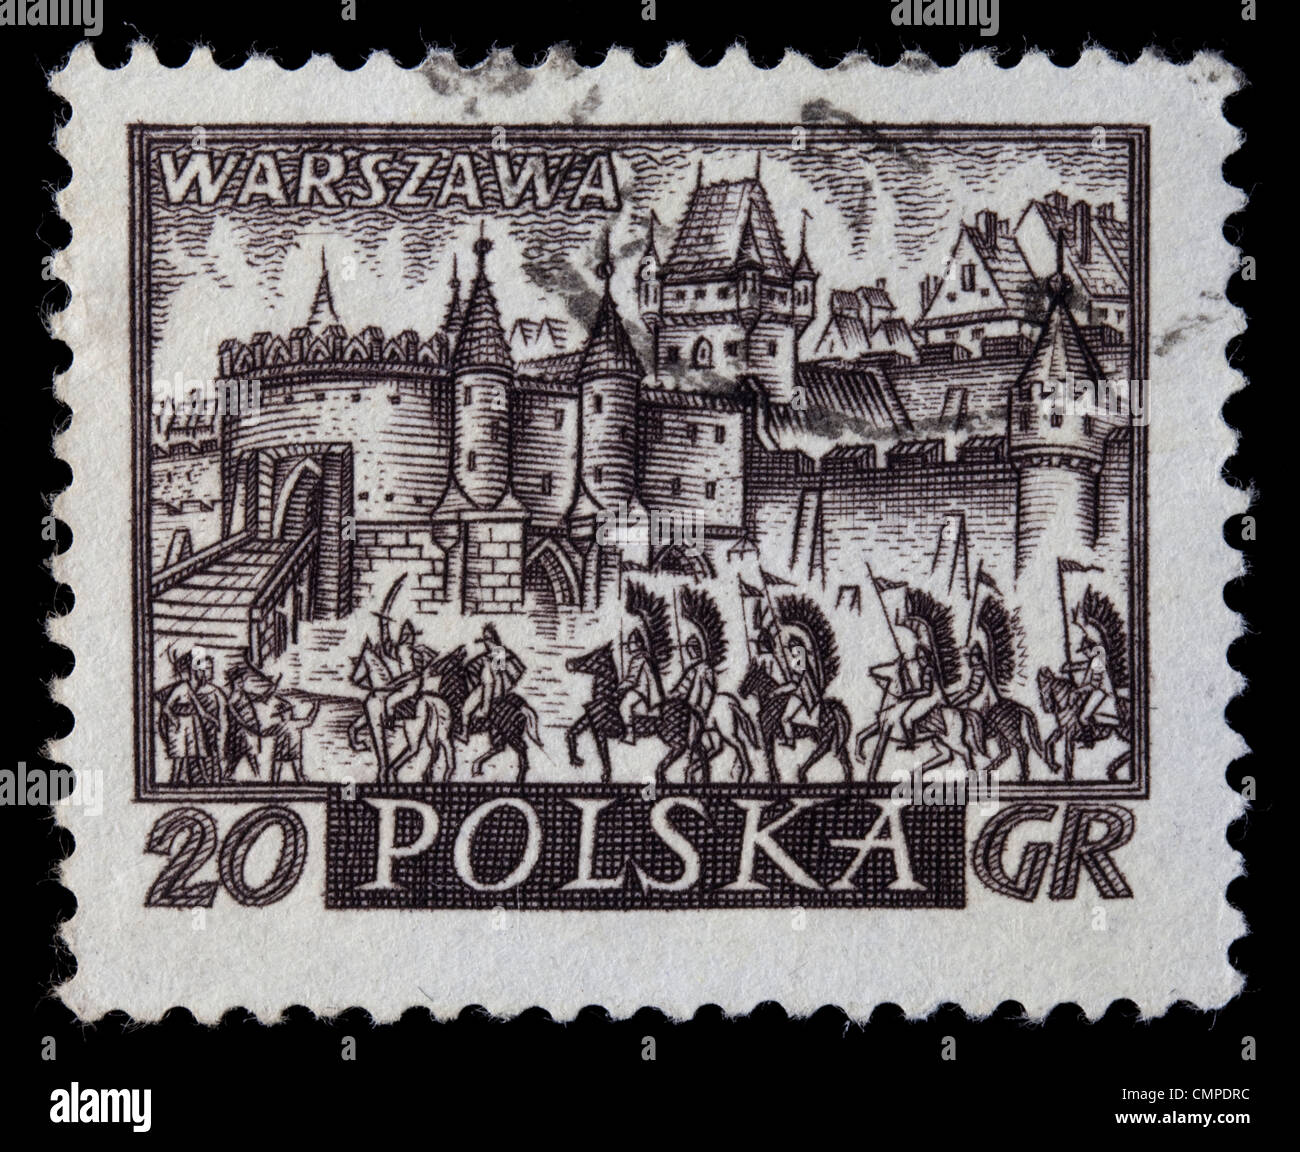 Polen, ca. 1960 - mittelalterliche Stadt von Warschau, polnischer Capitol, mit geflügelten Husaren Kavallerie auf einem Vintage abgebrochen Briefmarke, Stockfoto